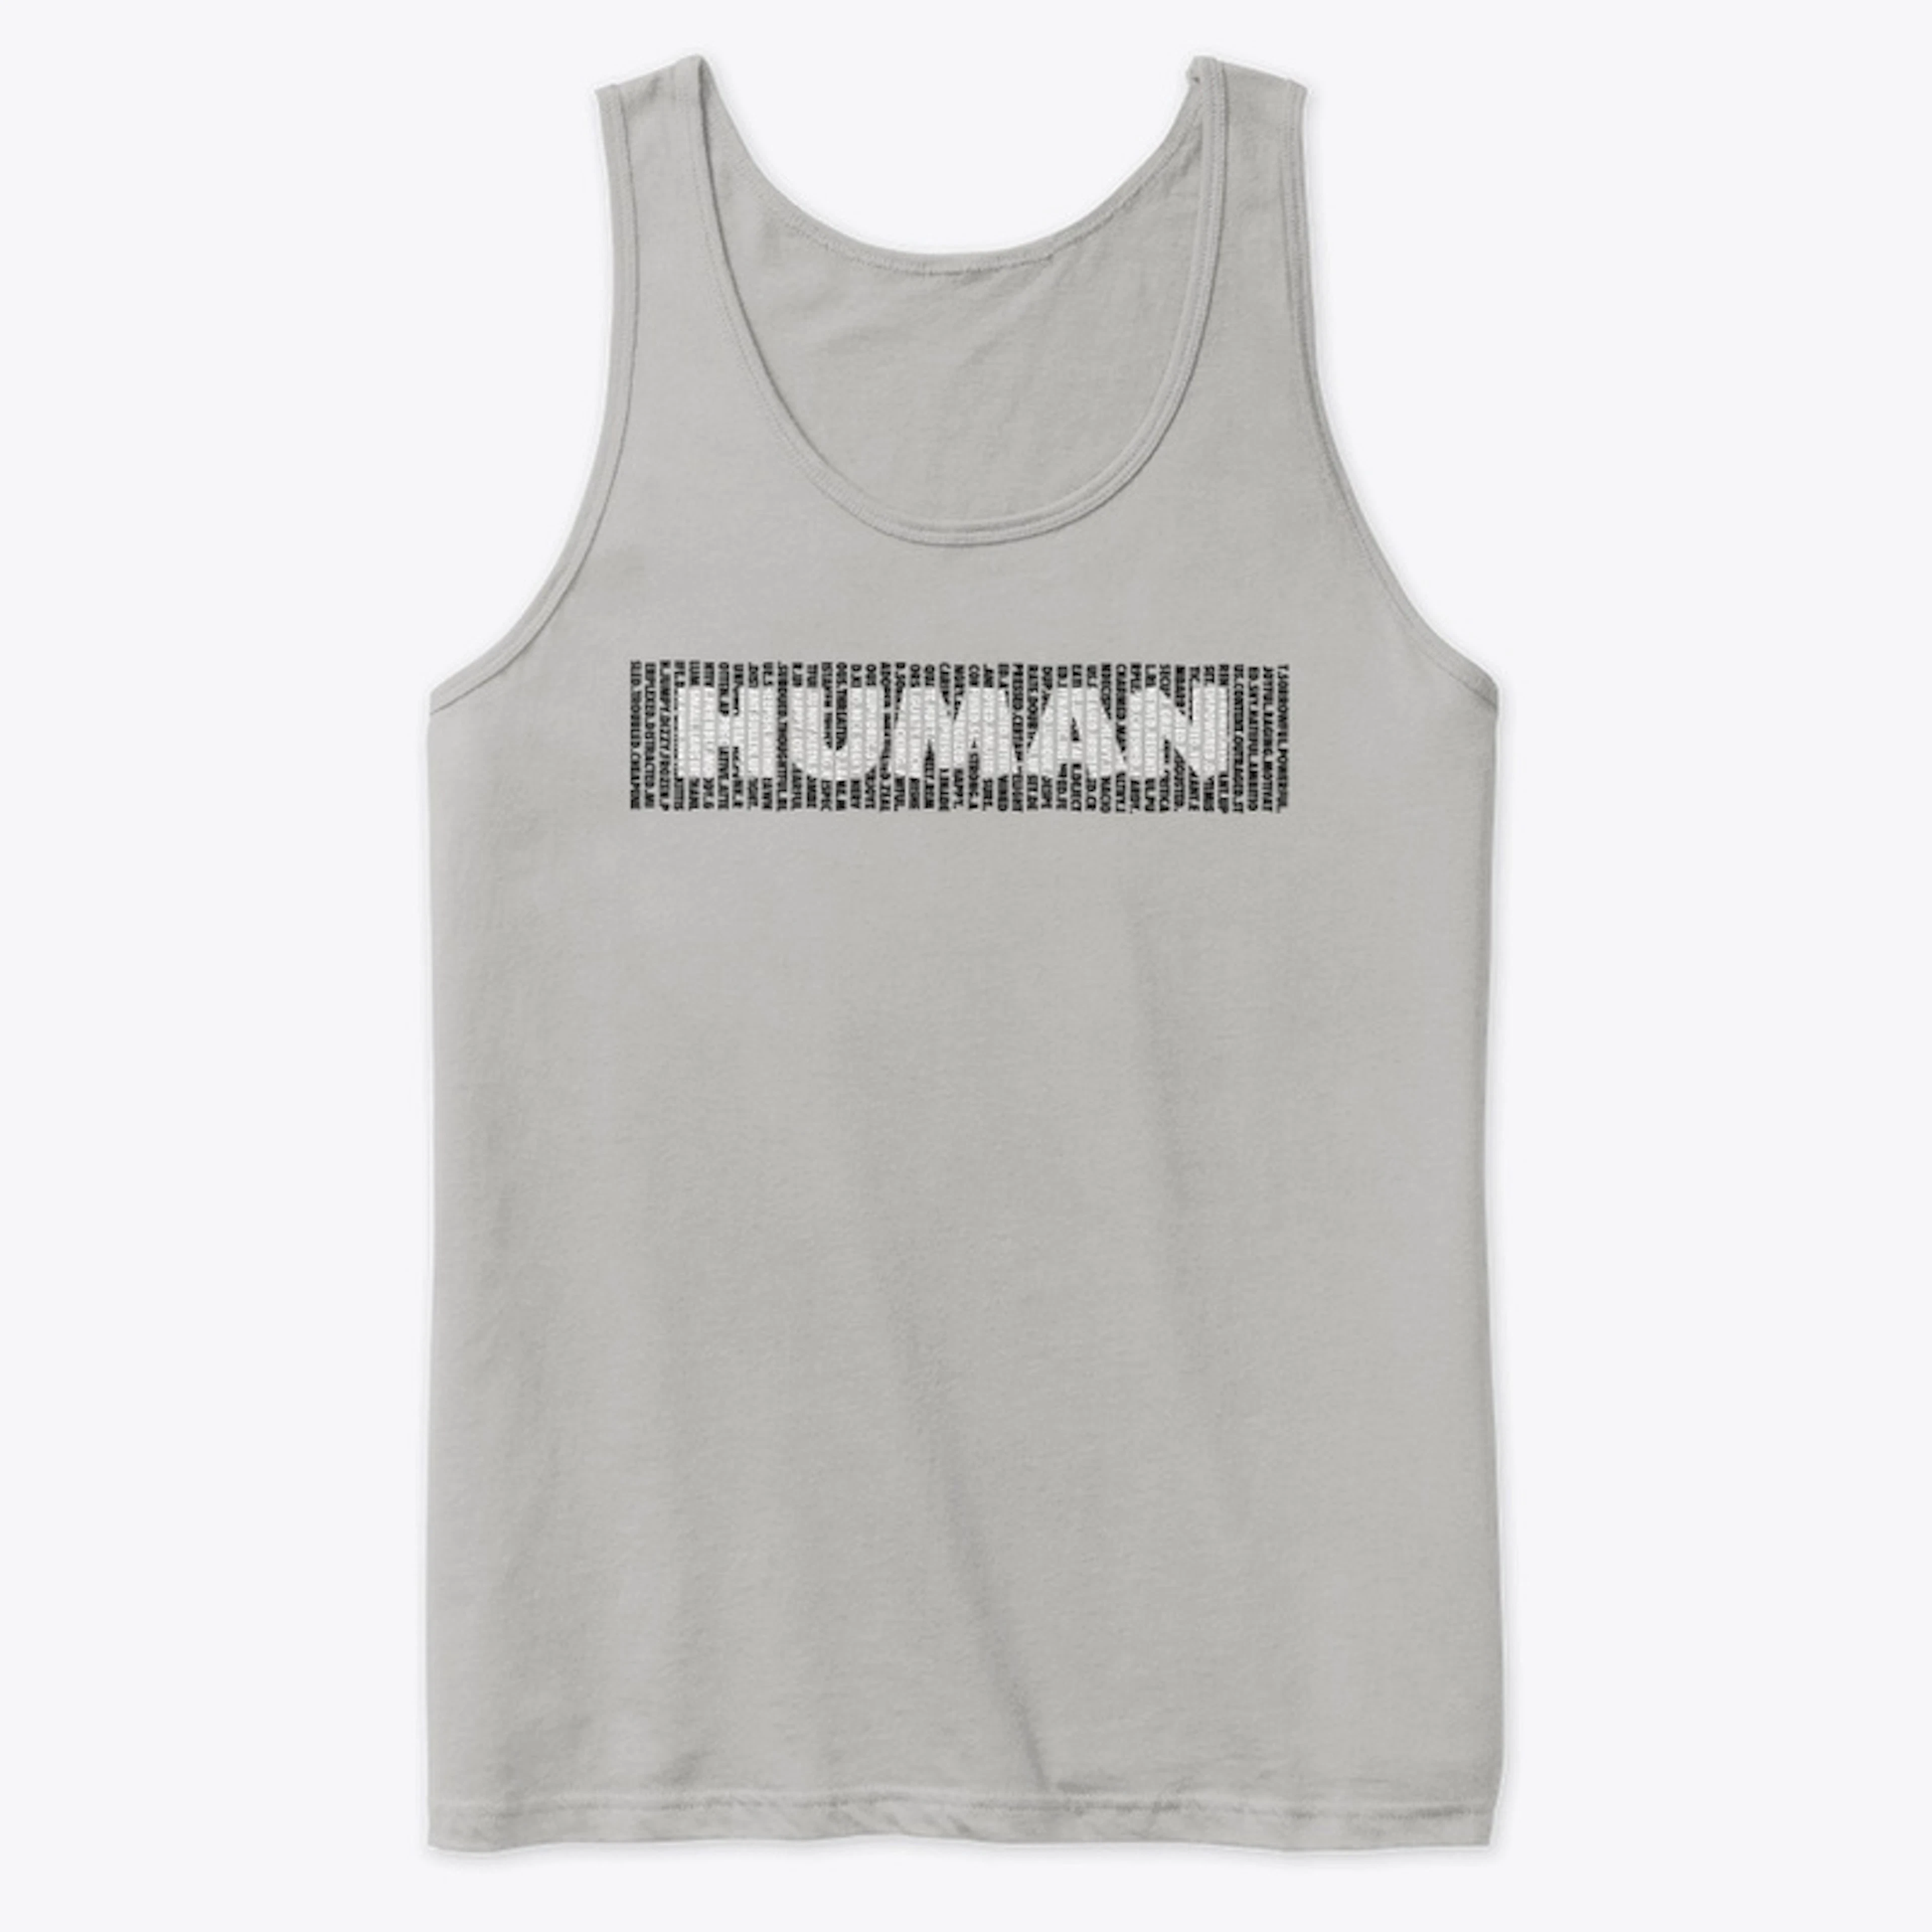 Human 